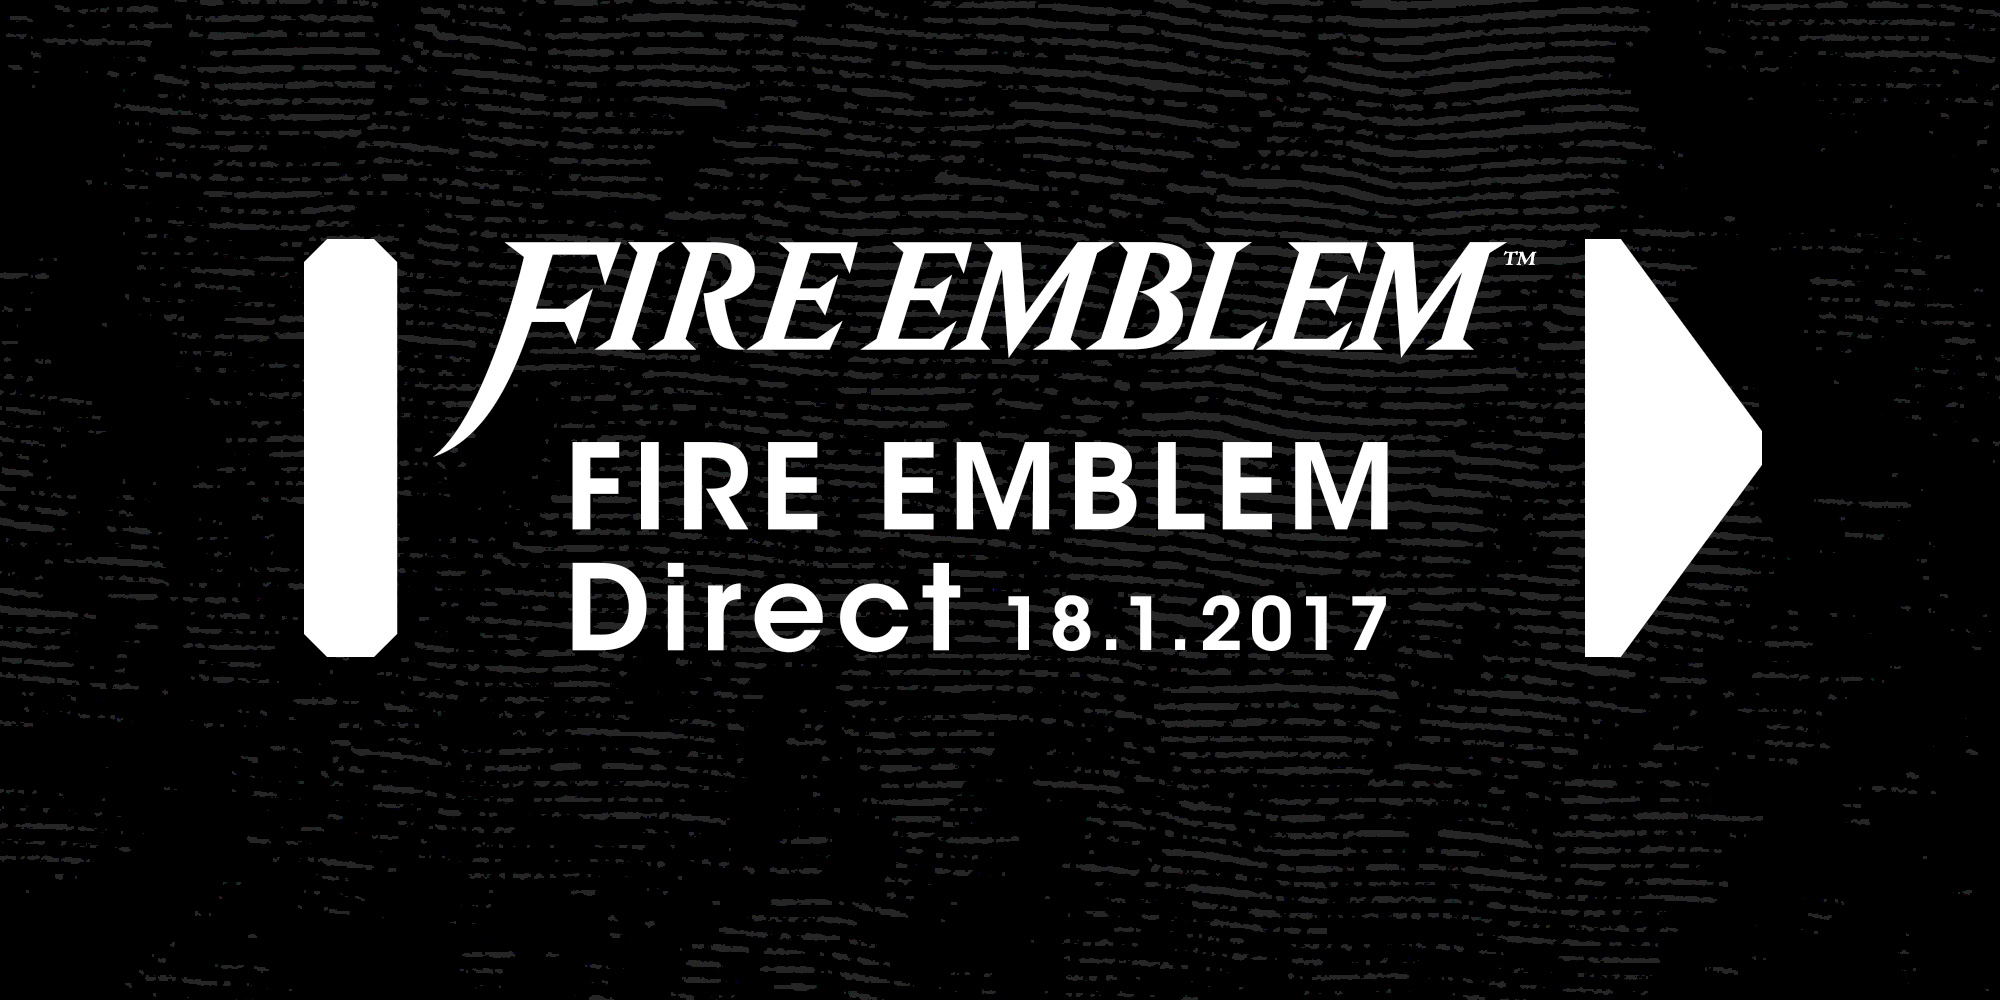 Mercoledì 18 gennaio andrà in onda un Nintendo Direct dedicato a Fire Emblem